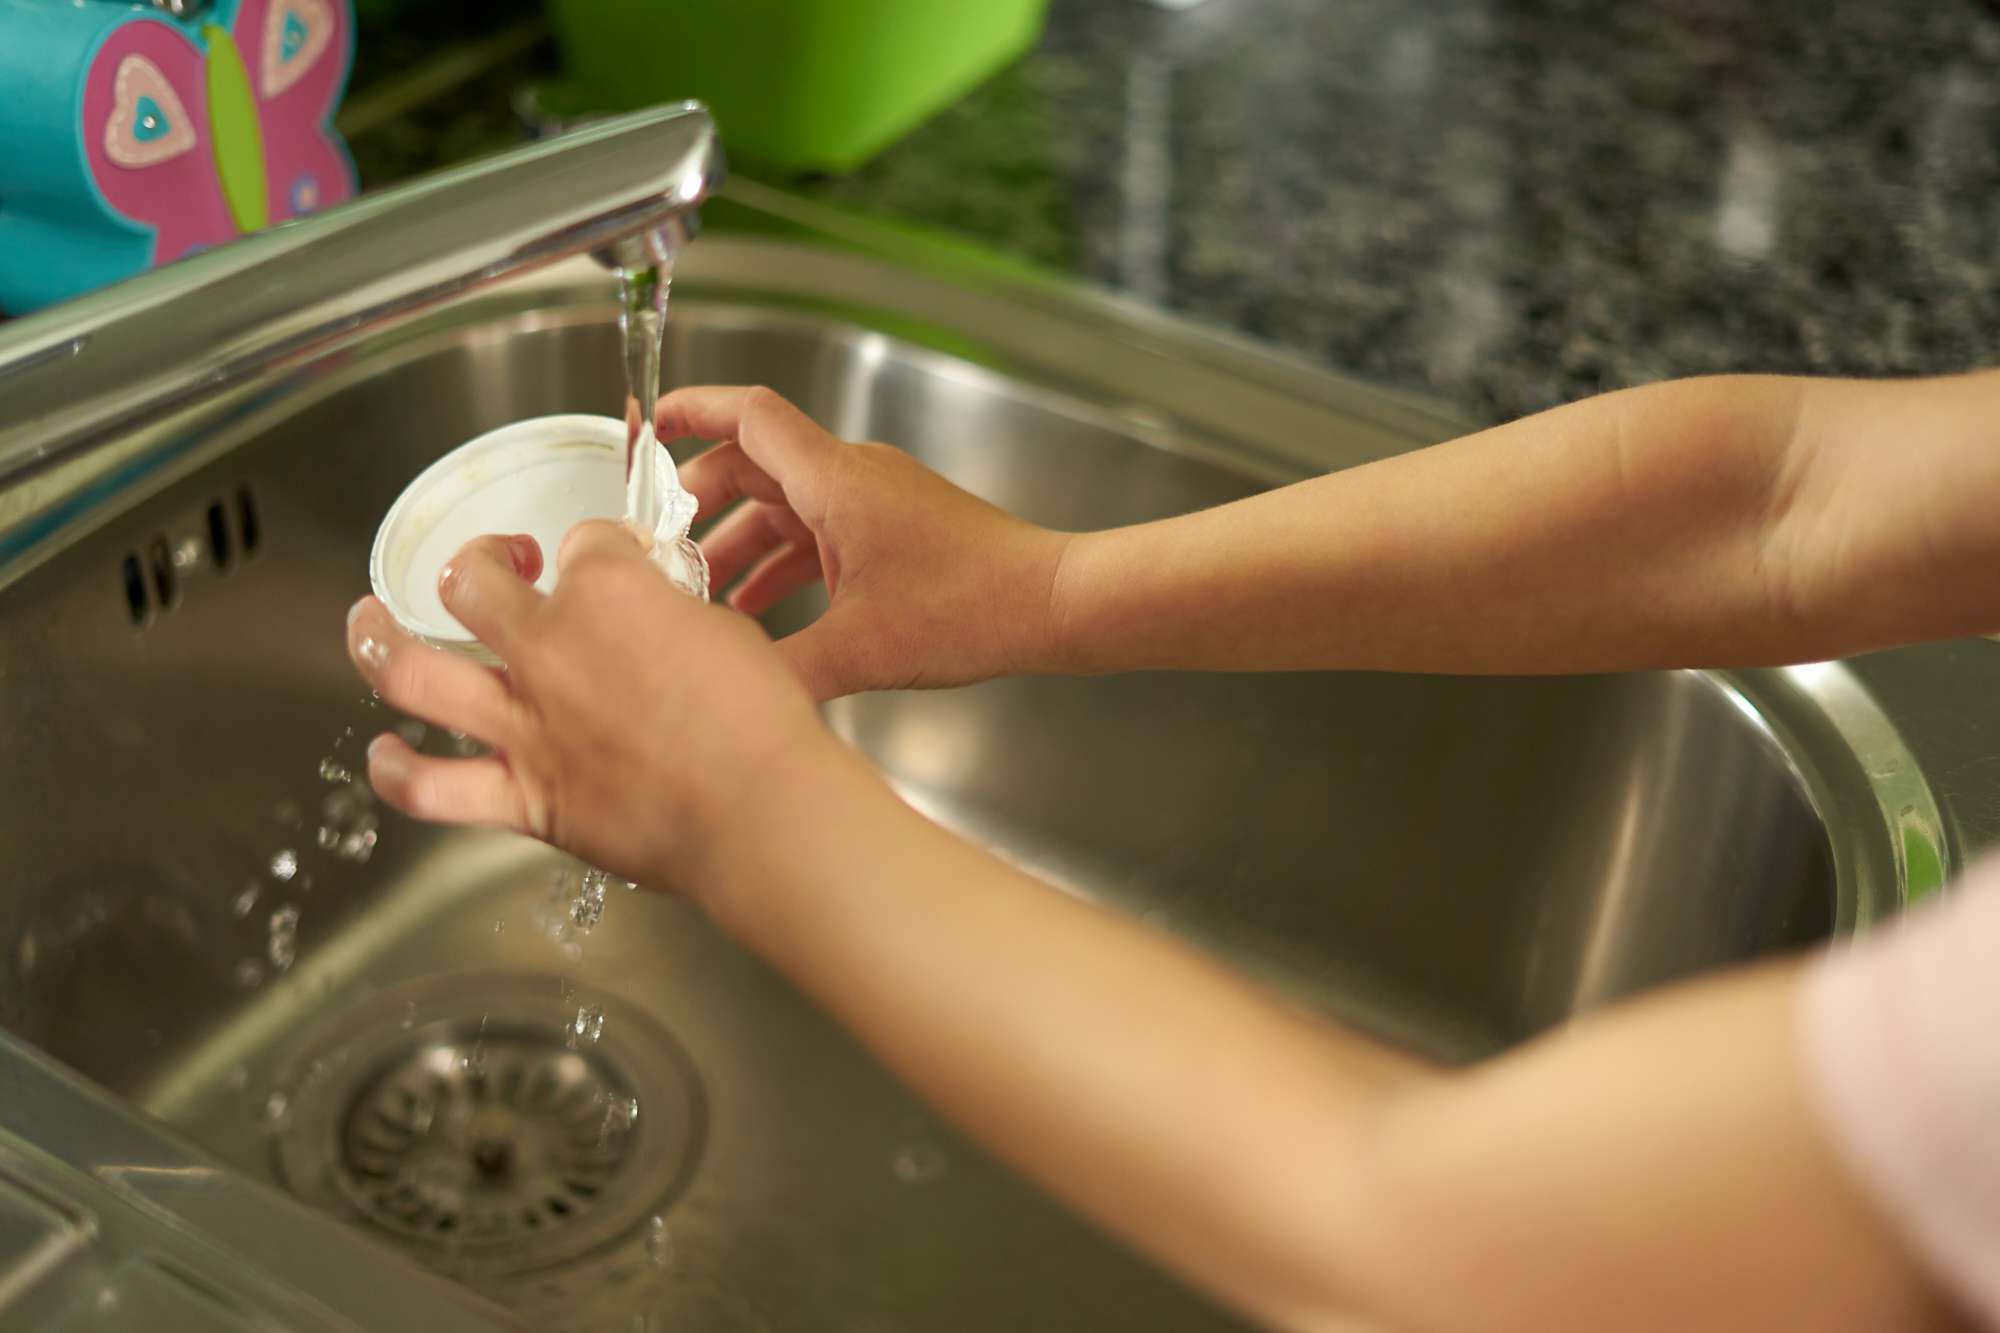 las manos del niño aclaran el vaso de plástico en el fregadero de la cocina antes de reciclarlo